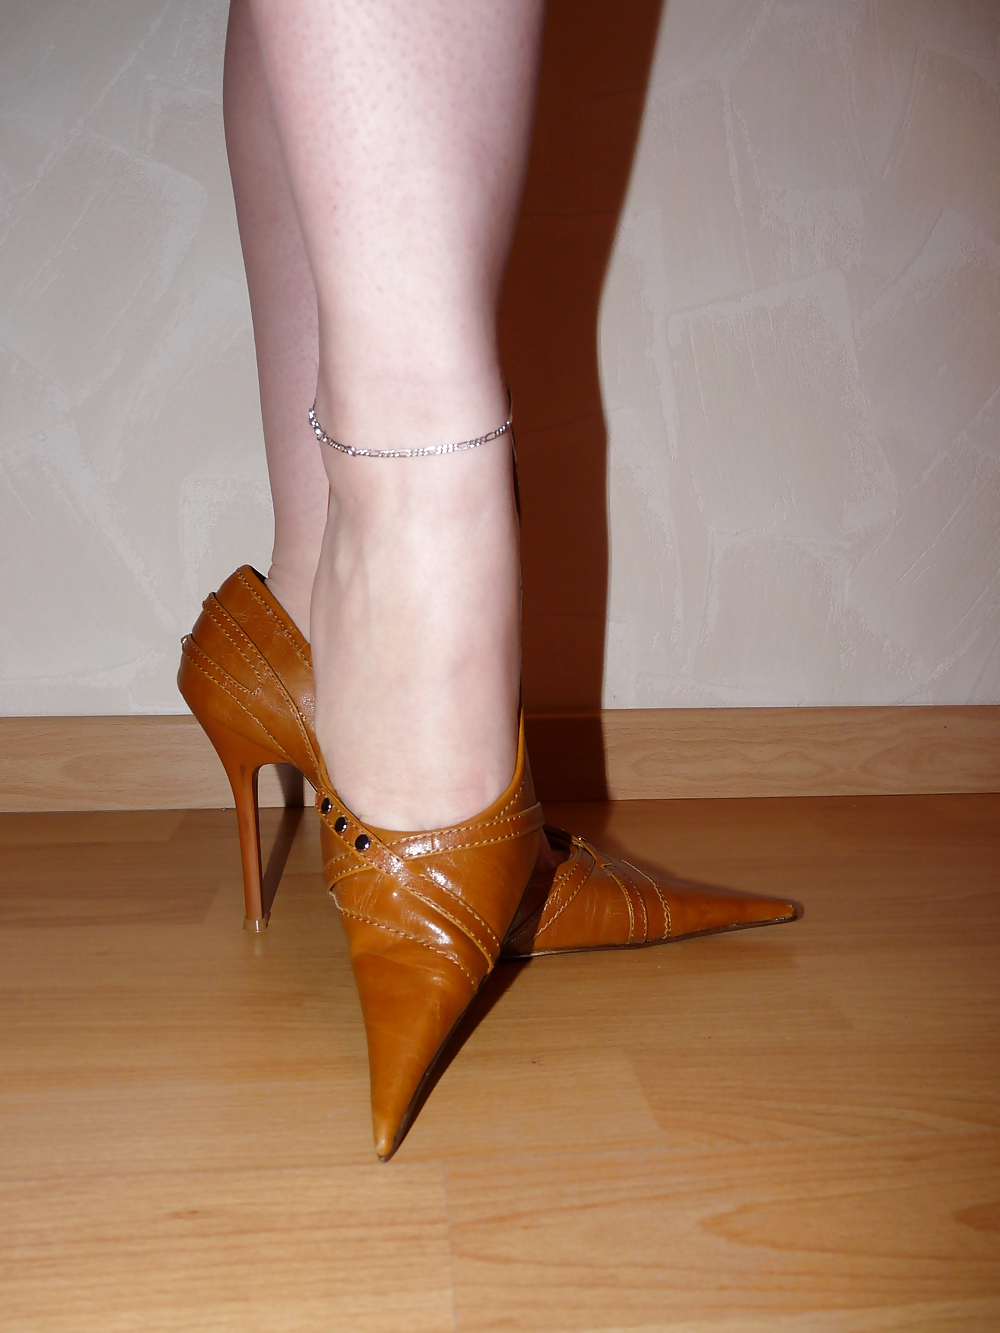 XXX wifes mega pointed shoe heels nylon pantyhose